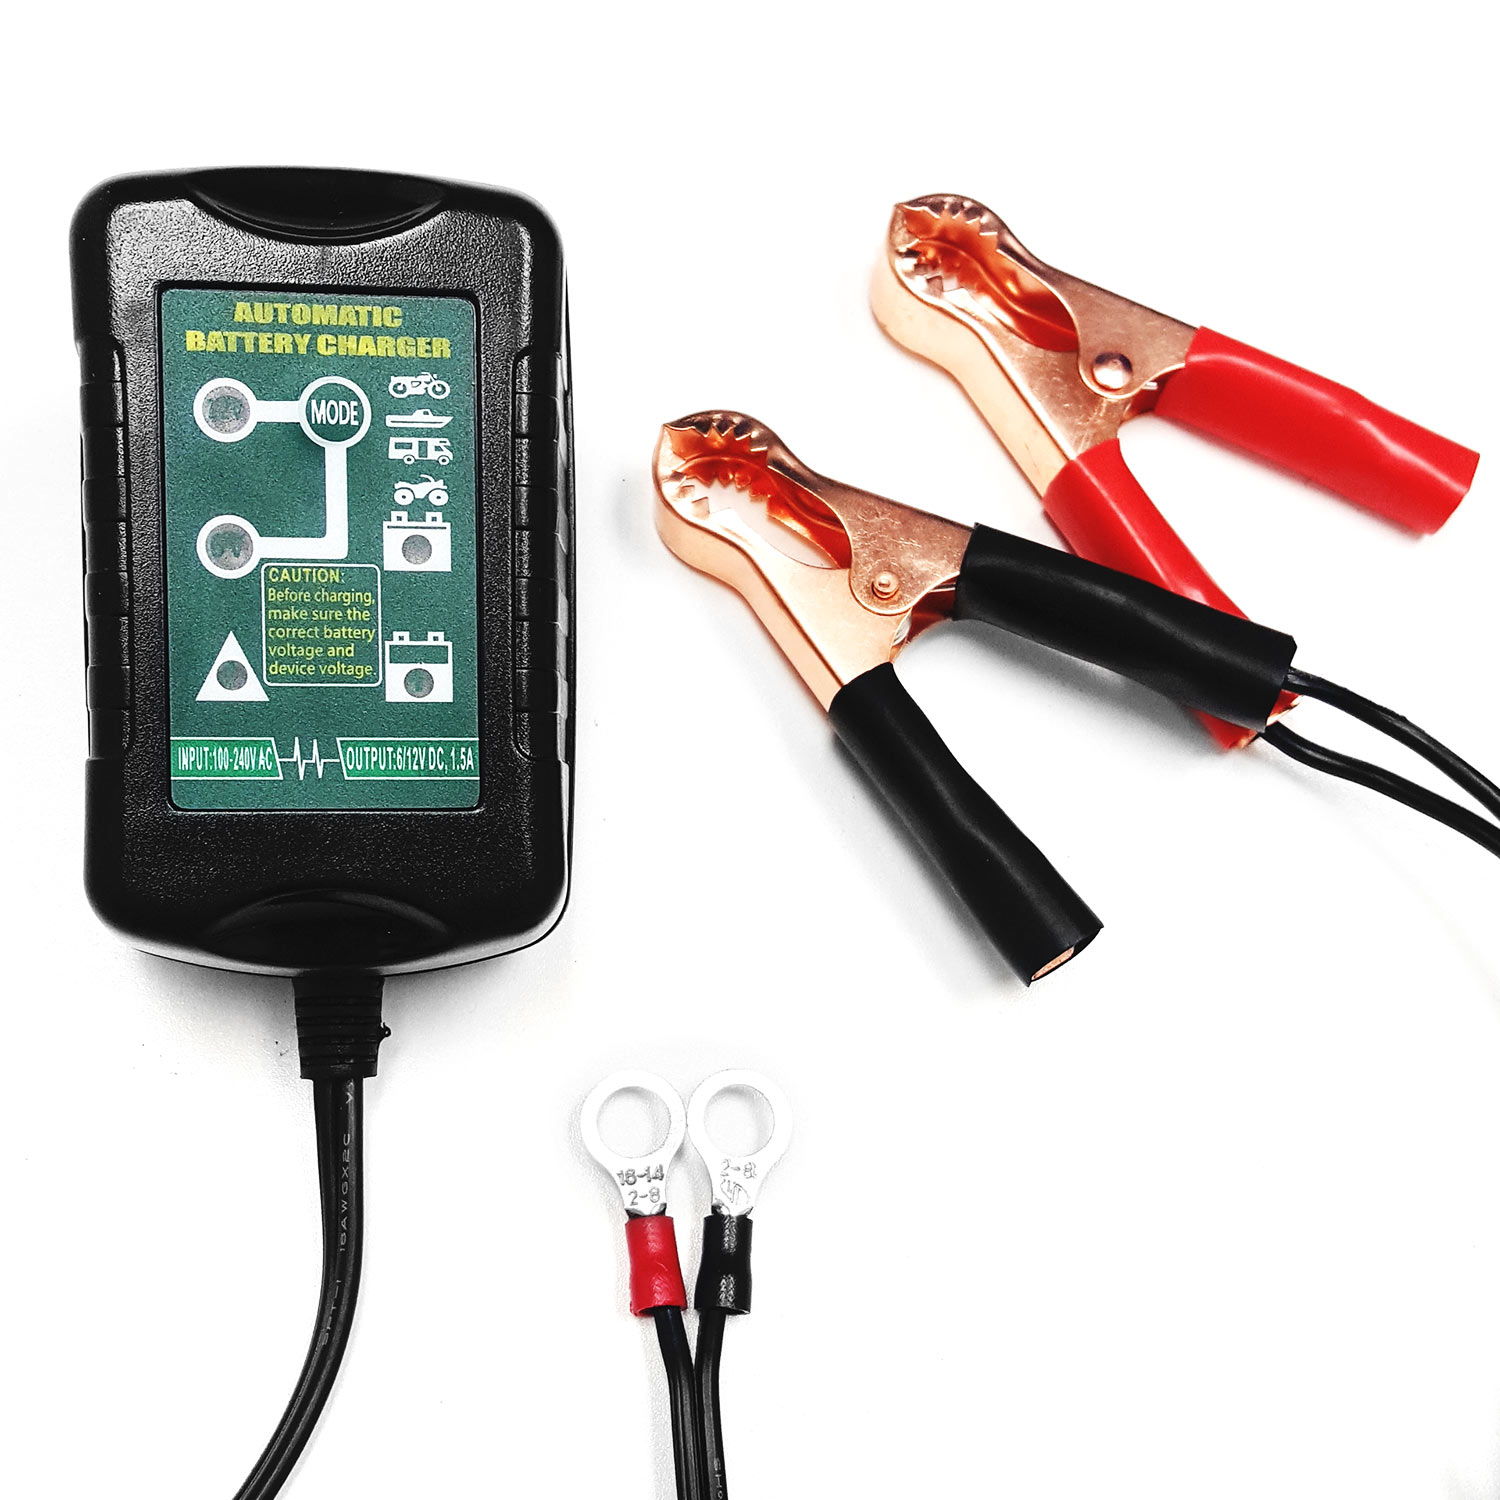 Biltek Smart Battery Trickle Charger Maintainer 1.0 Amp 12V / 6V - Fully Charges Maintains Proper Voltage - Prevents Overcharge -